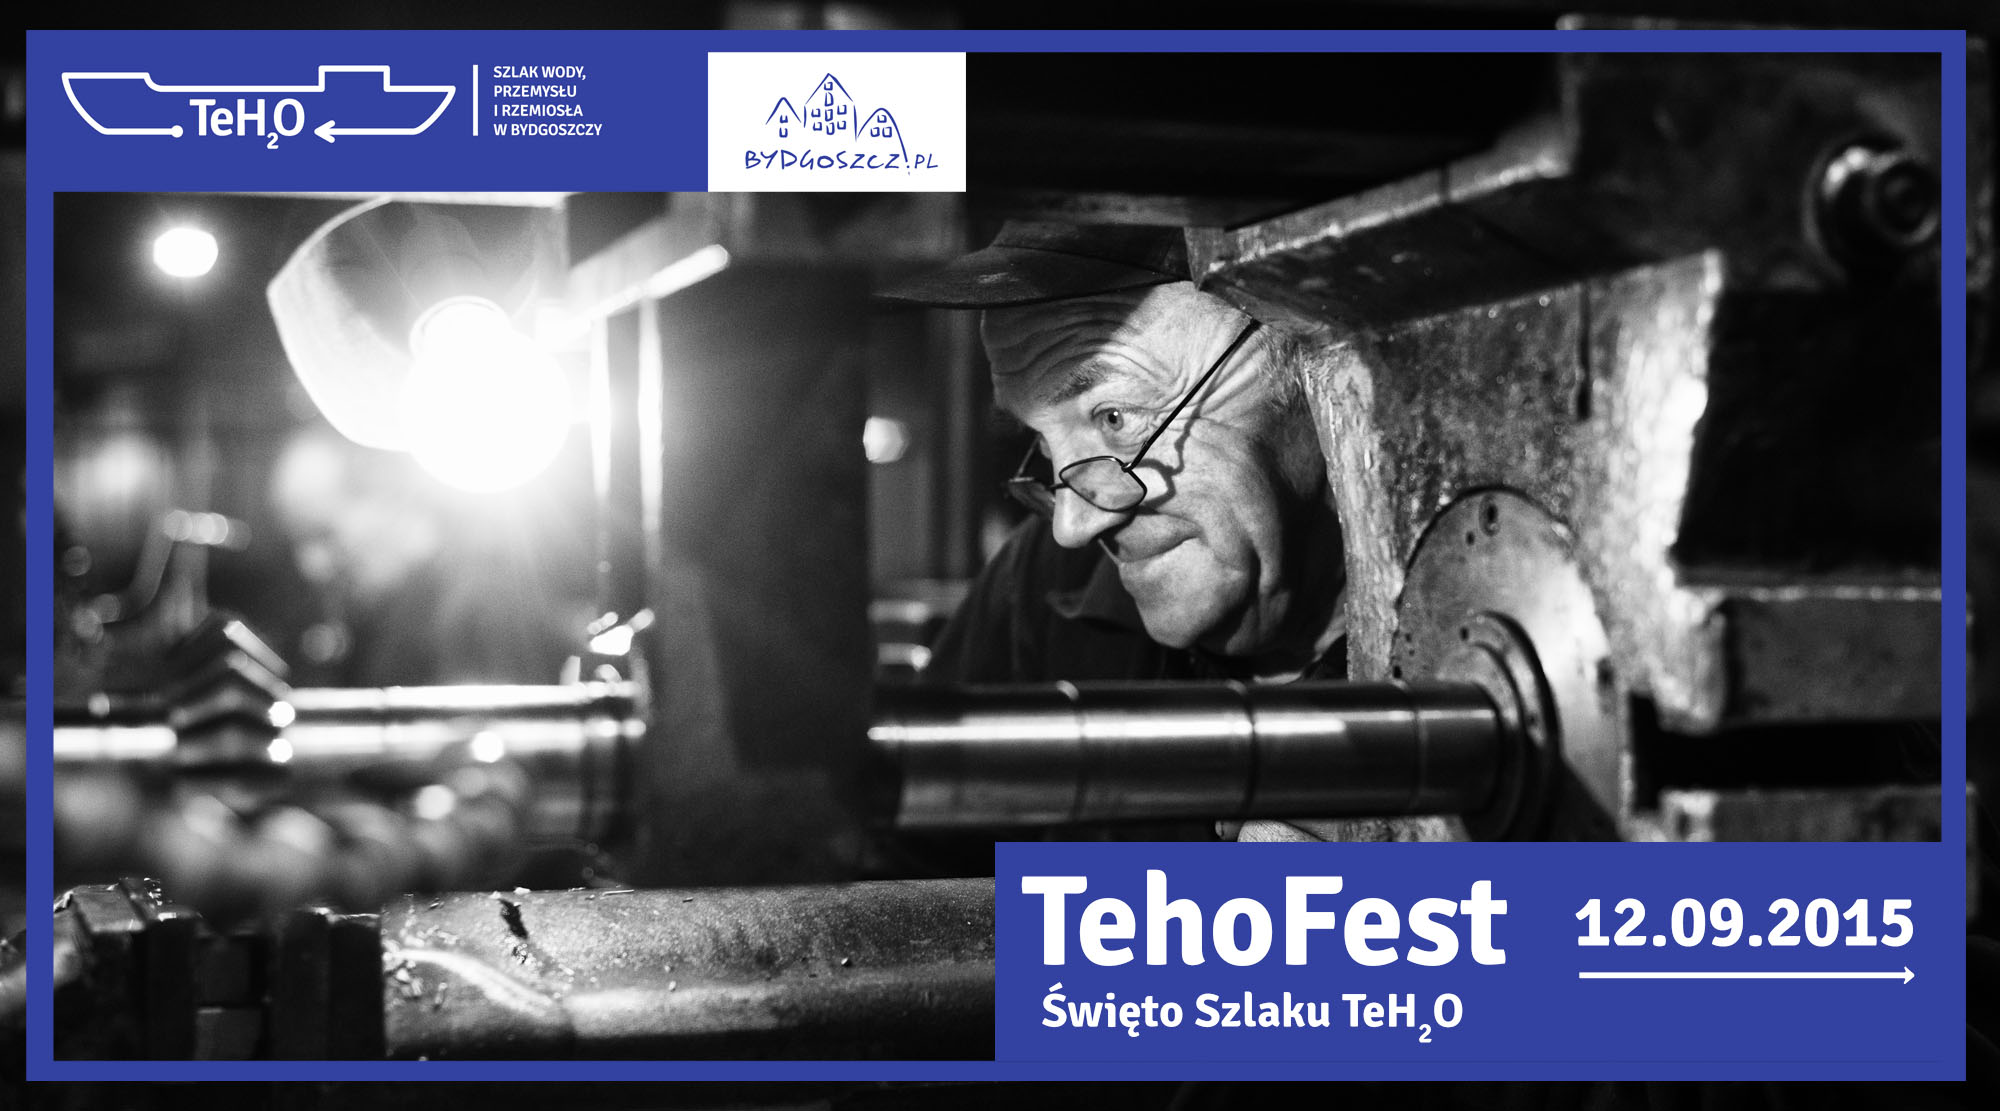 Święto Szlaku TeH2O – TehoFest 2015